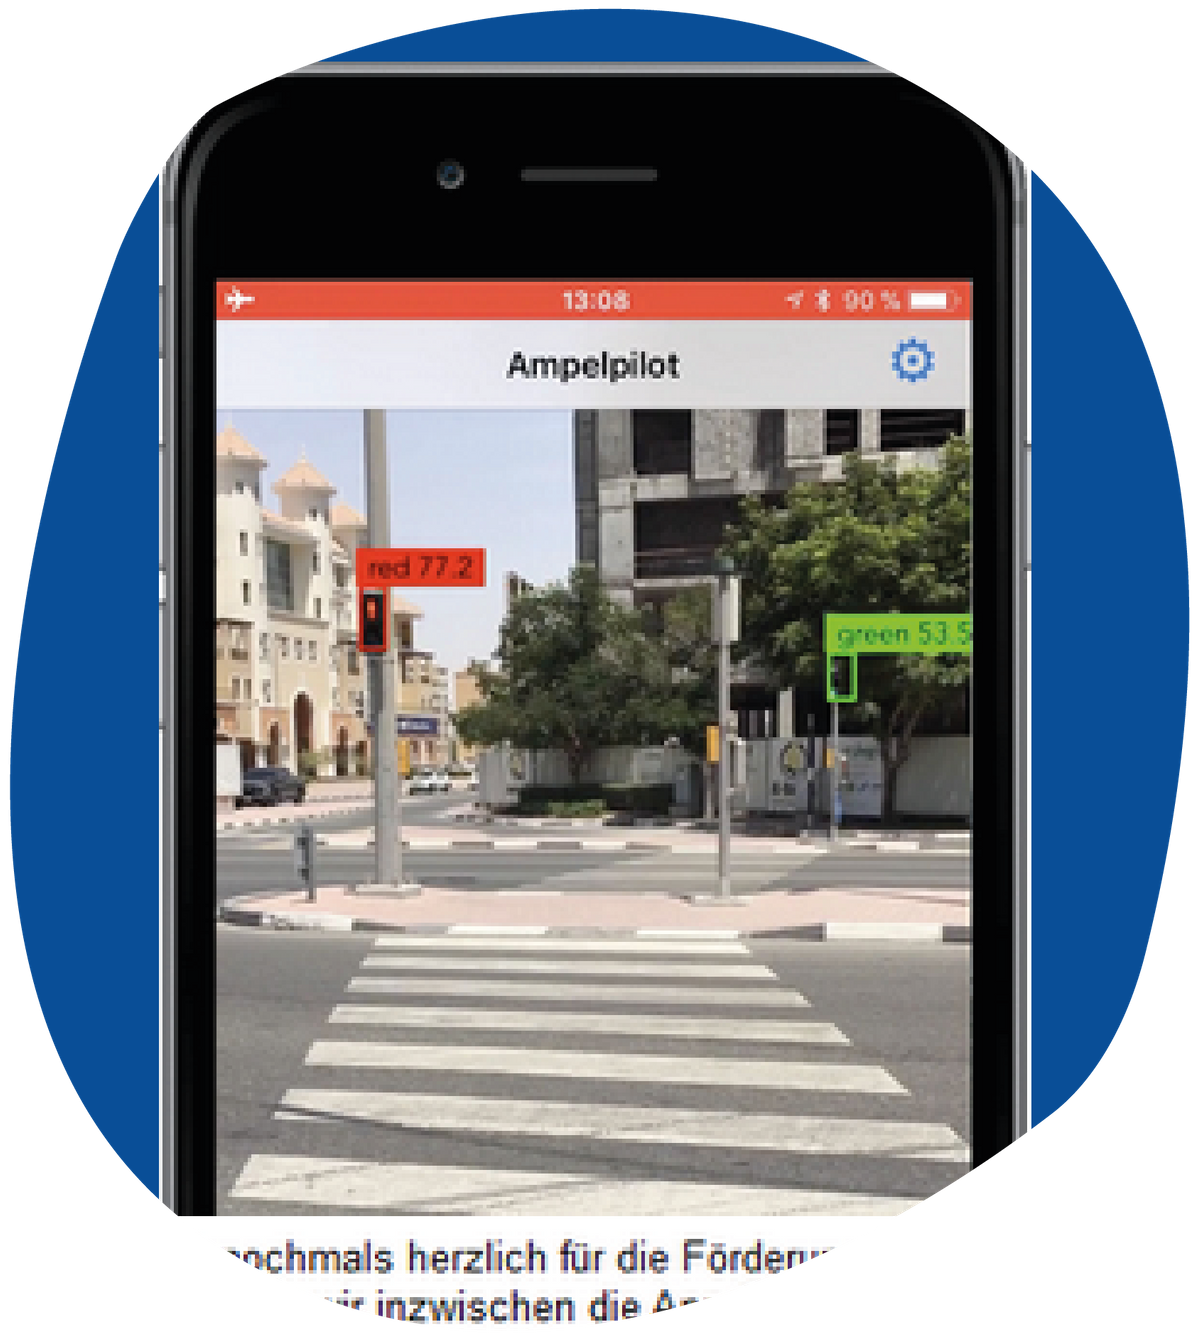 Screenshot der App Ampelpilot. Gezeigt wird eine Straßenkreuzung mit zwei Ampeln. Die Ampeln sind in der Farbe markiert, in der sie leuchten und entsprechend mit 